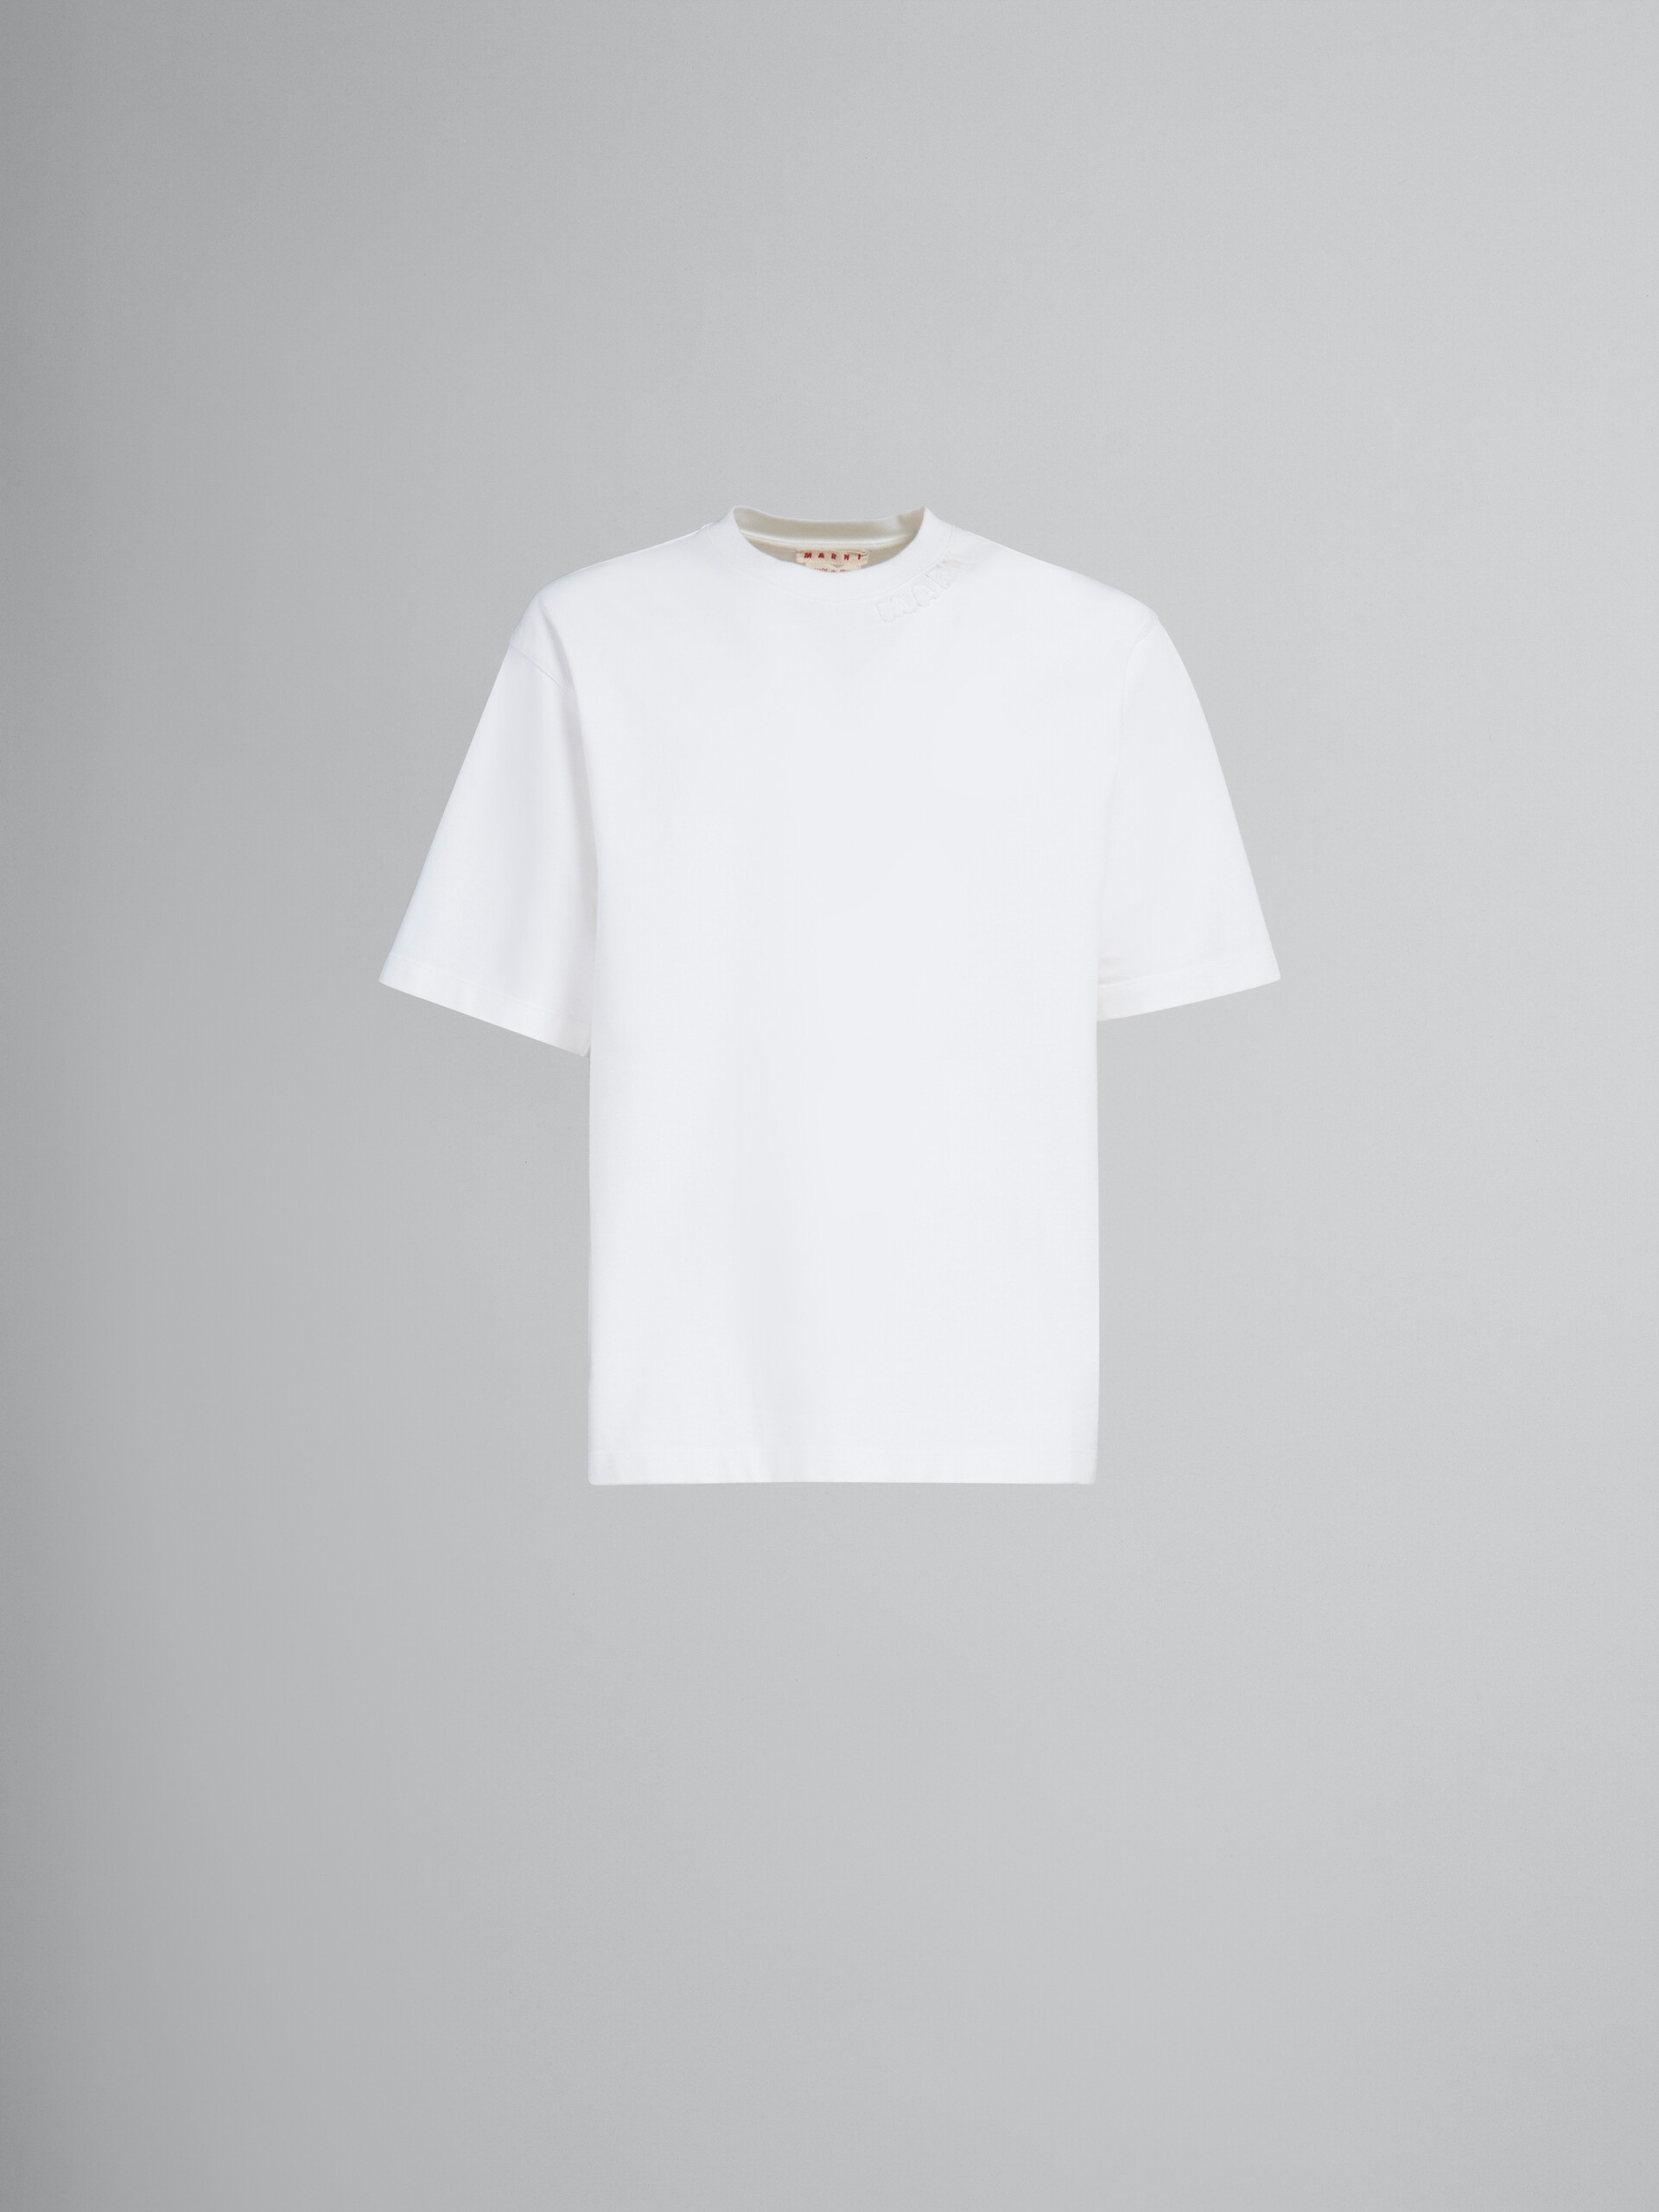 Camiseta oversize azul de algodón ecológico con parches Marni - Camisetas - Image 1